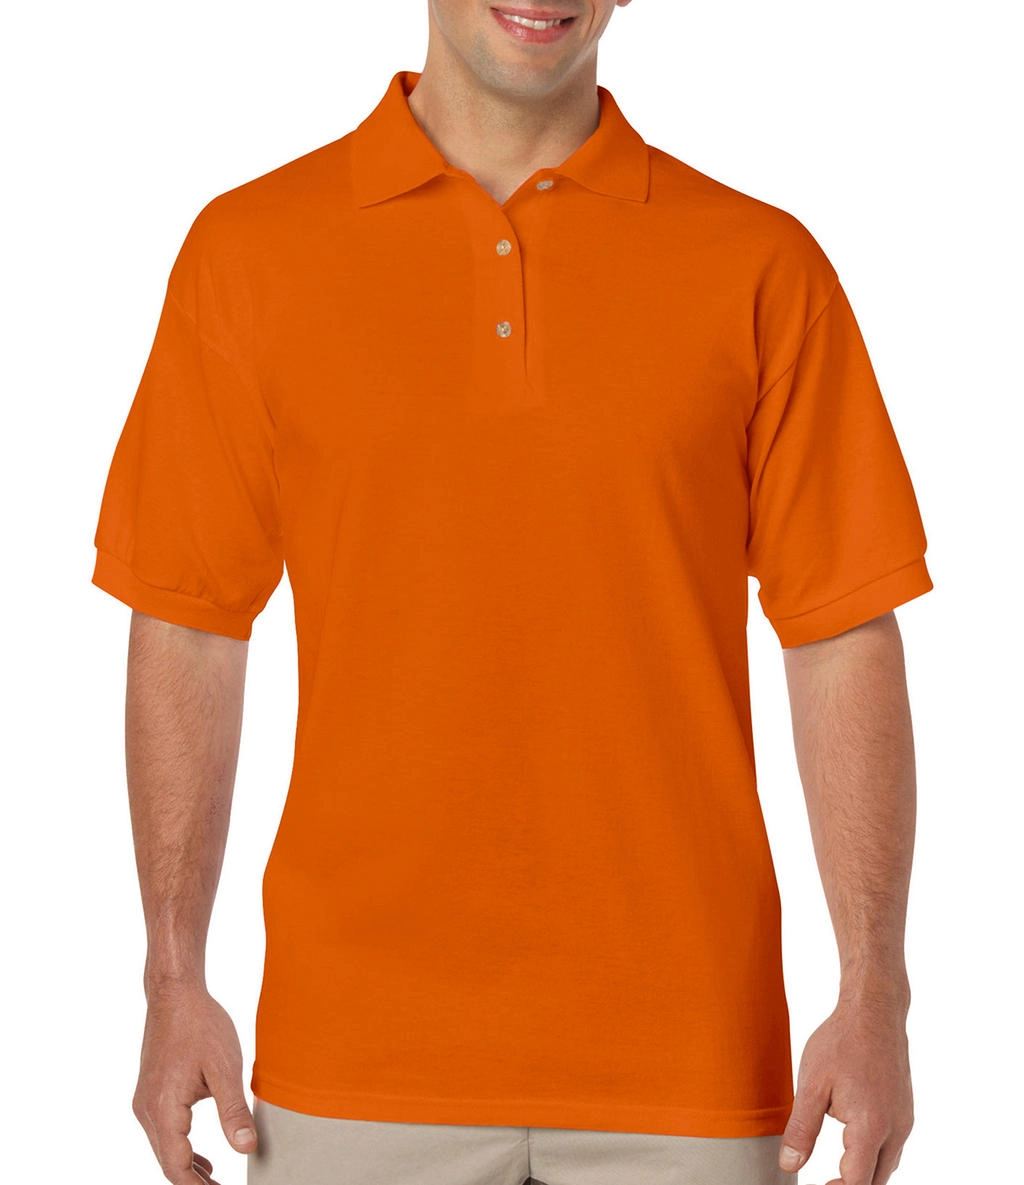 DryBlend Adult Jersey Polo zum Besticken und Bedrucken in der Farbe Safety Orange mit Ihren Logo, Schriftzug oder Motiv.